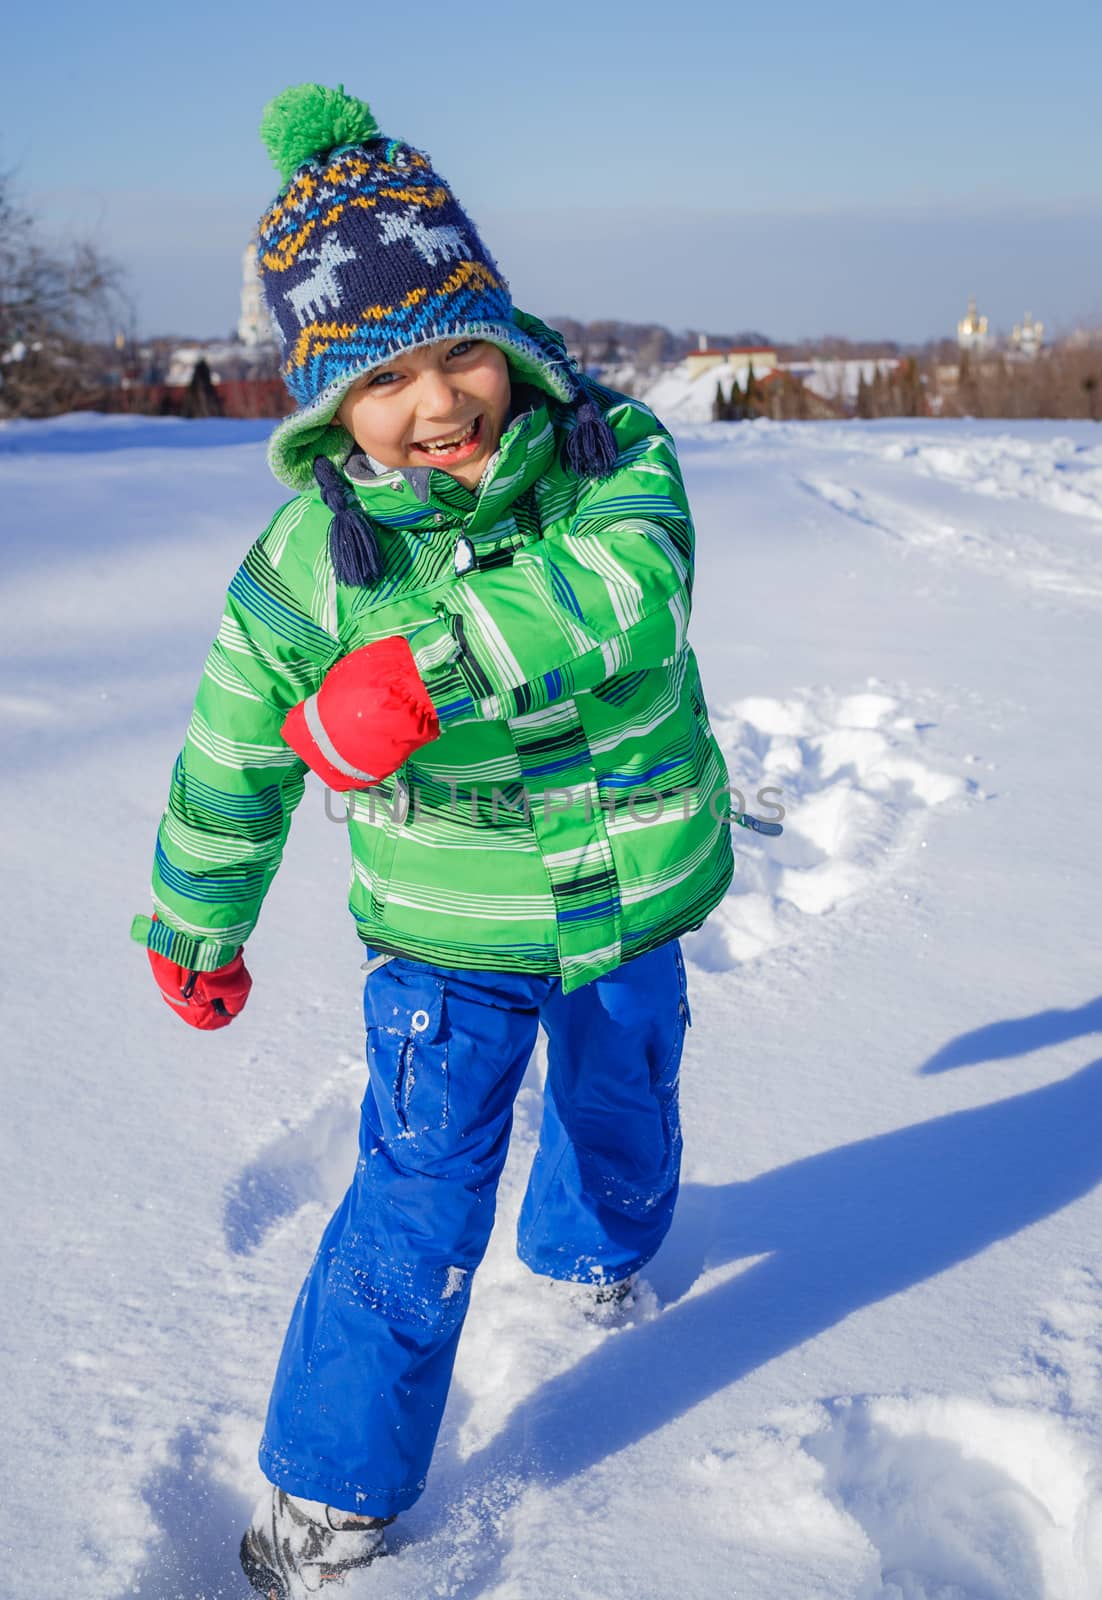 Winter, play, fun - Cute little boy having fun in winter park